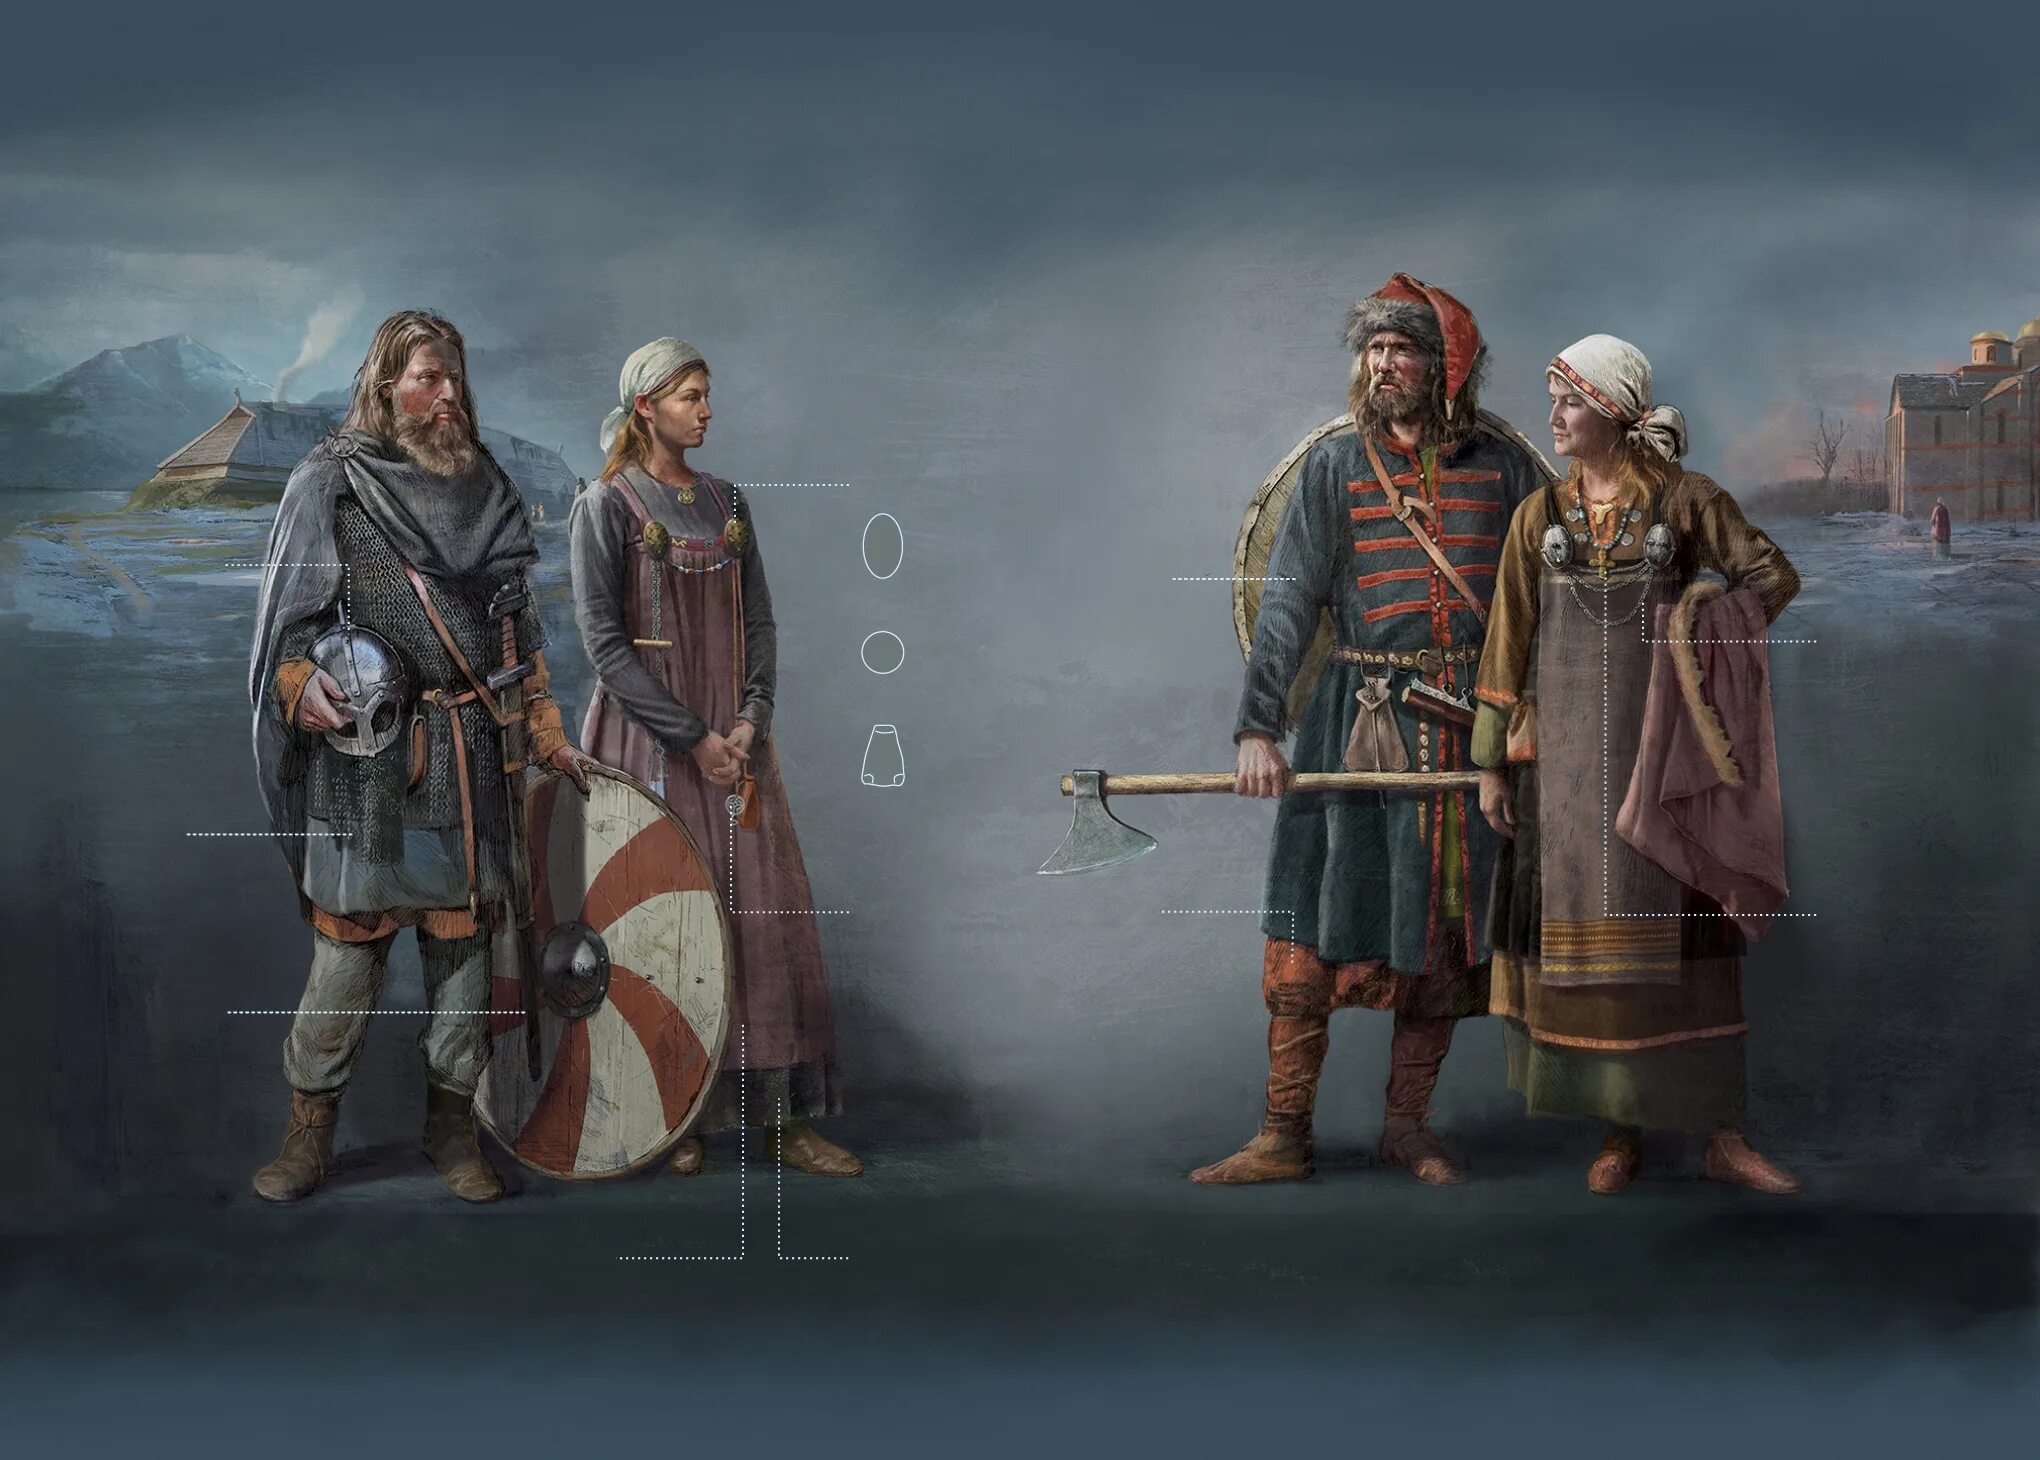 Одежда 10 век воины Скандинавия. Викинги Скандинавия 10 век. Норманны скандинавы. Реконструкция викинга 9 век. 10 век эпоха